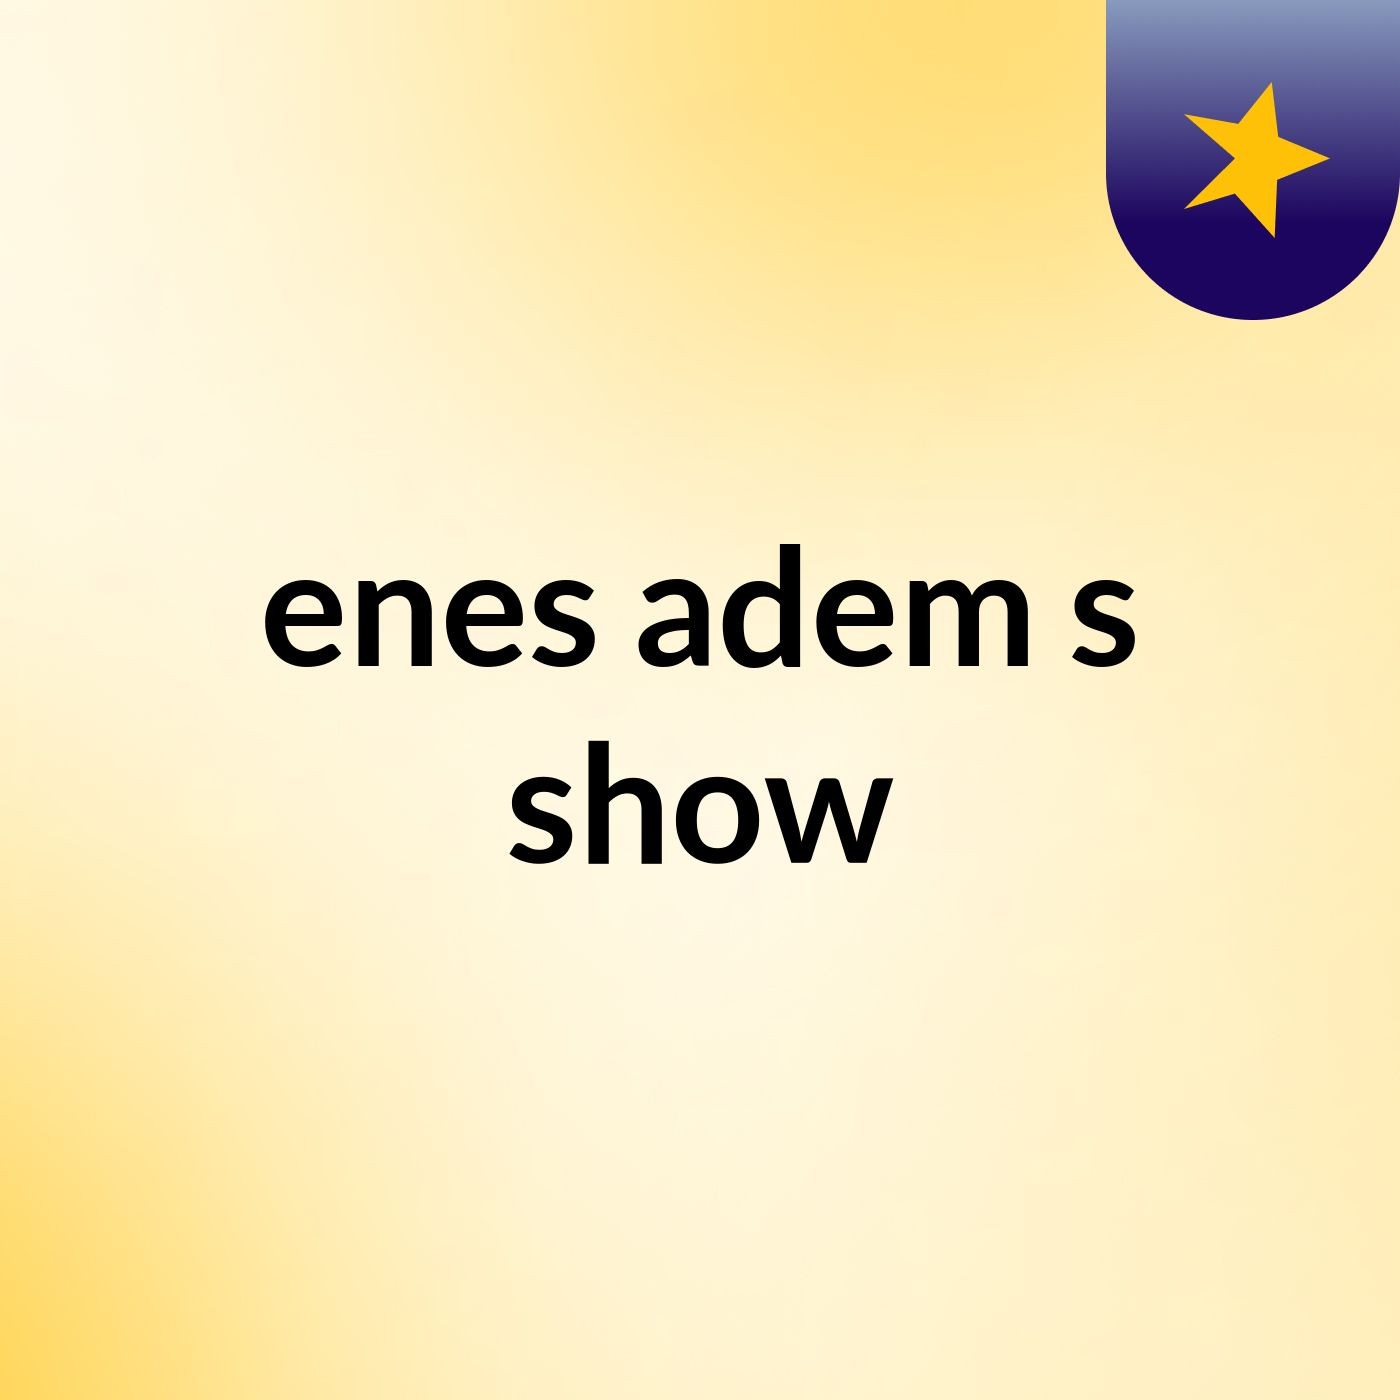 enes adem's show